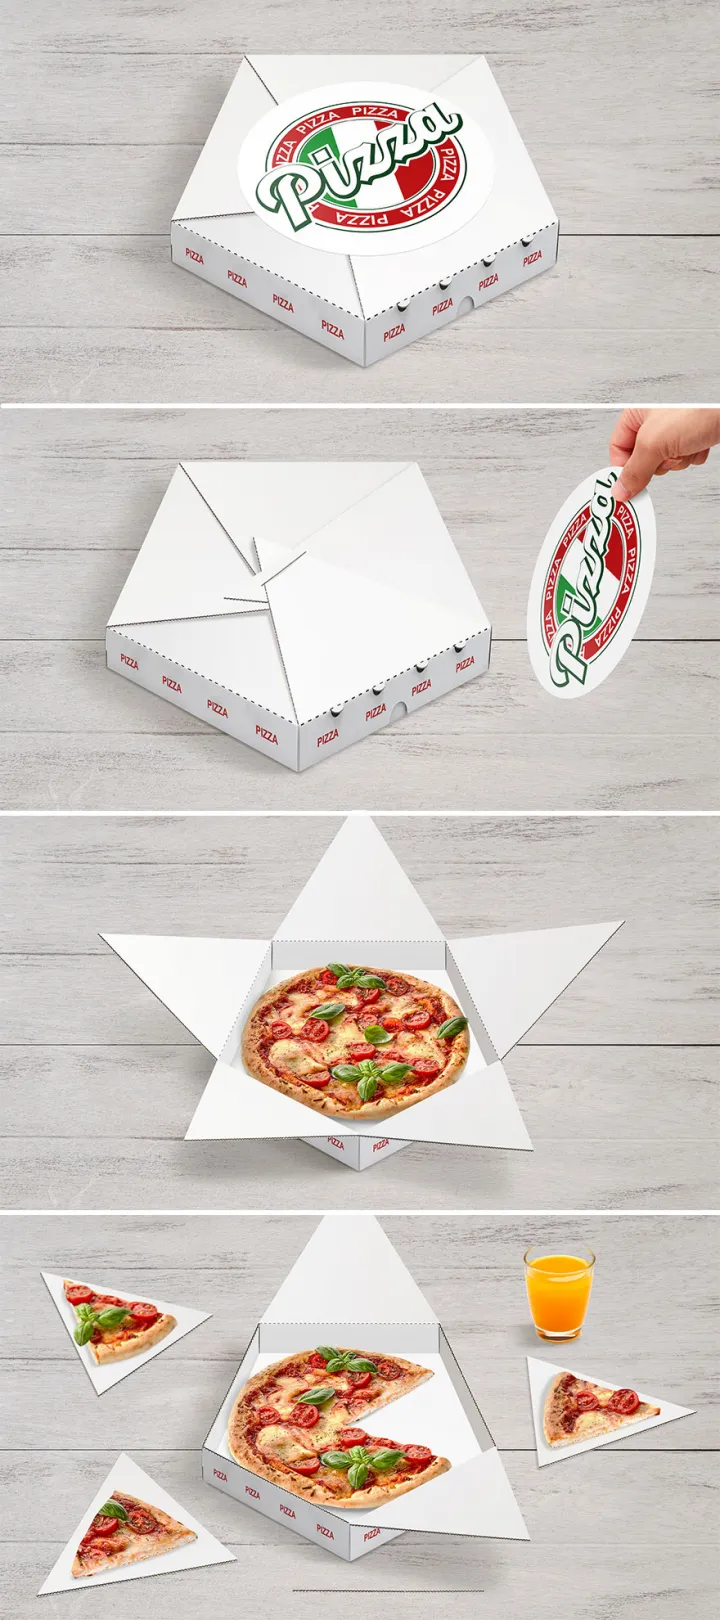 Упаковка для пиццы, в которой части коробки становятся тарелками.